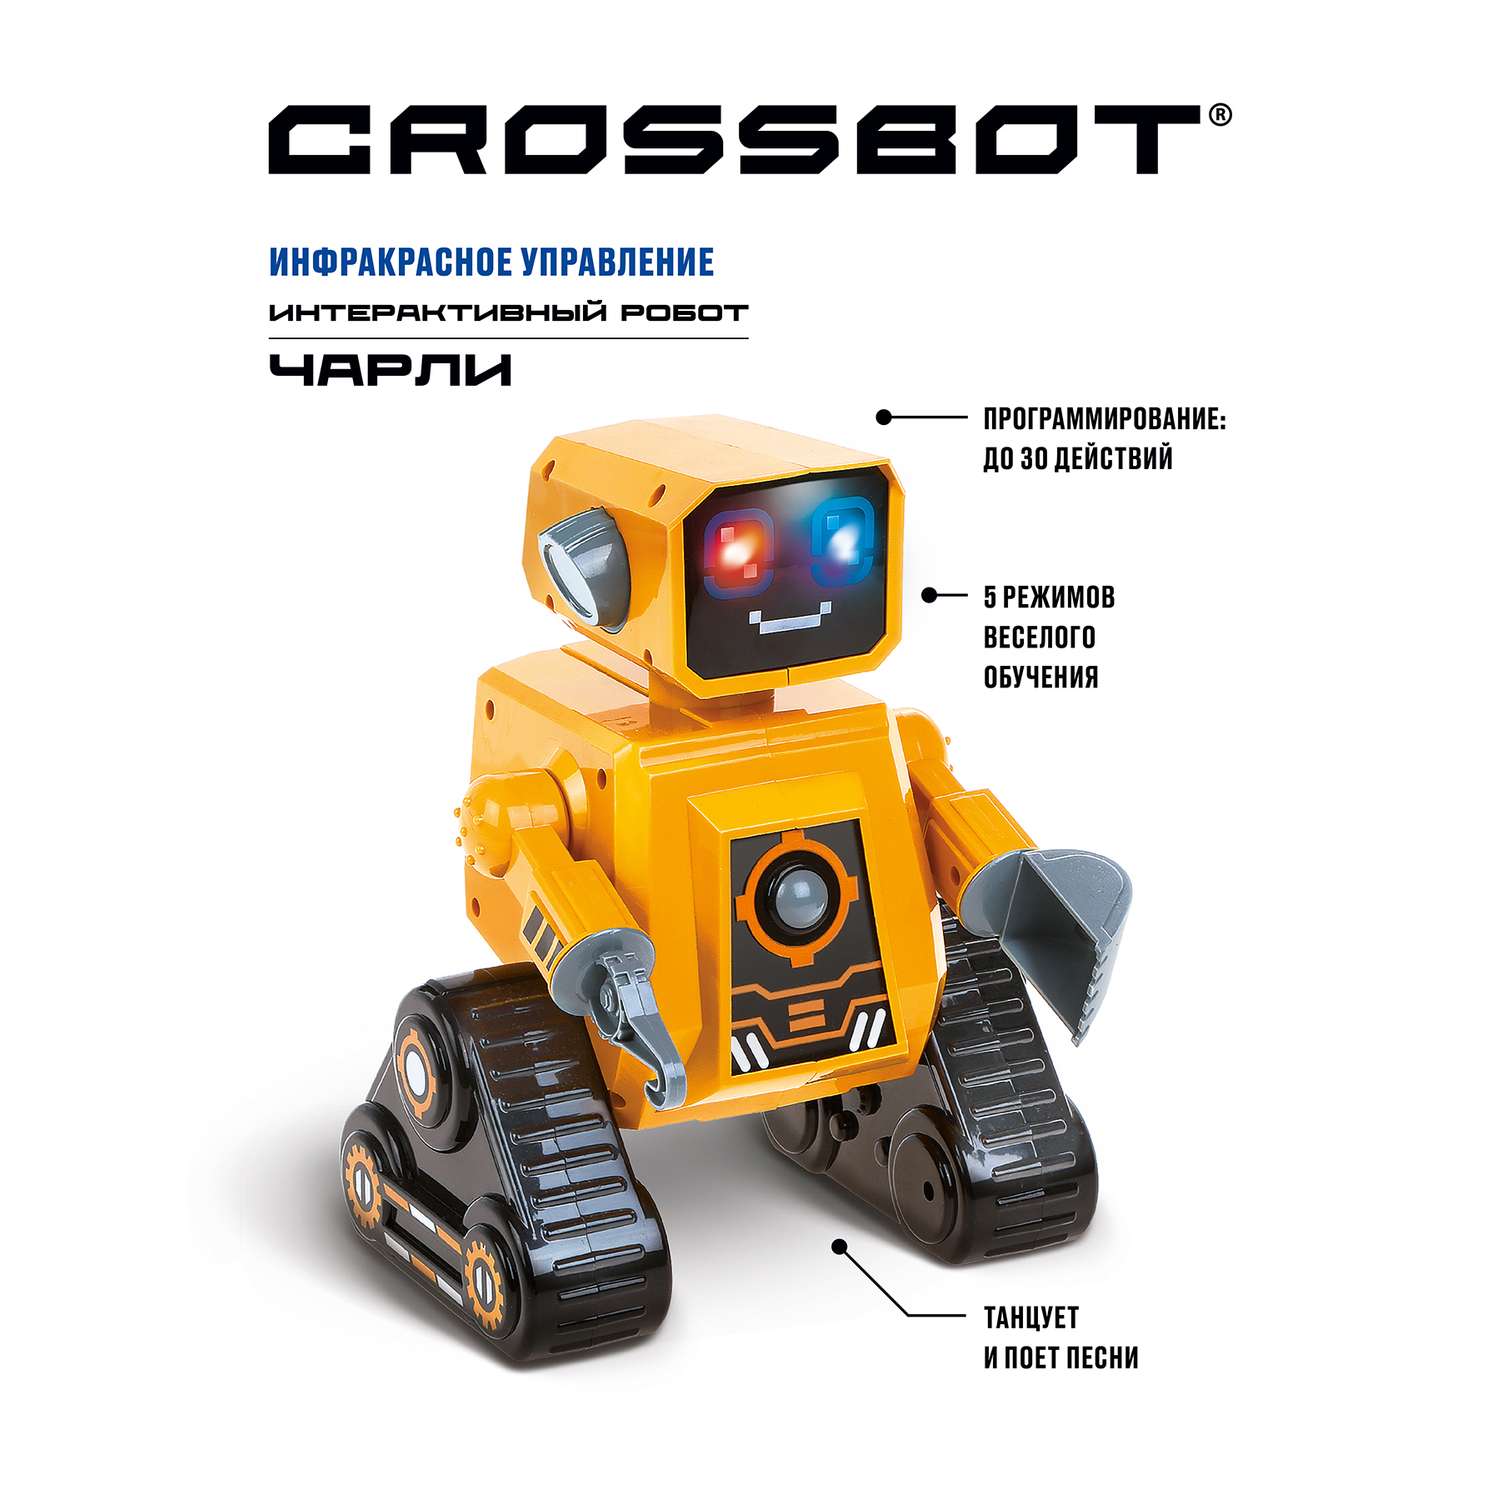 Робот CROSSBOT Чарли интерактивный на инфракрасном управлении - фото 1